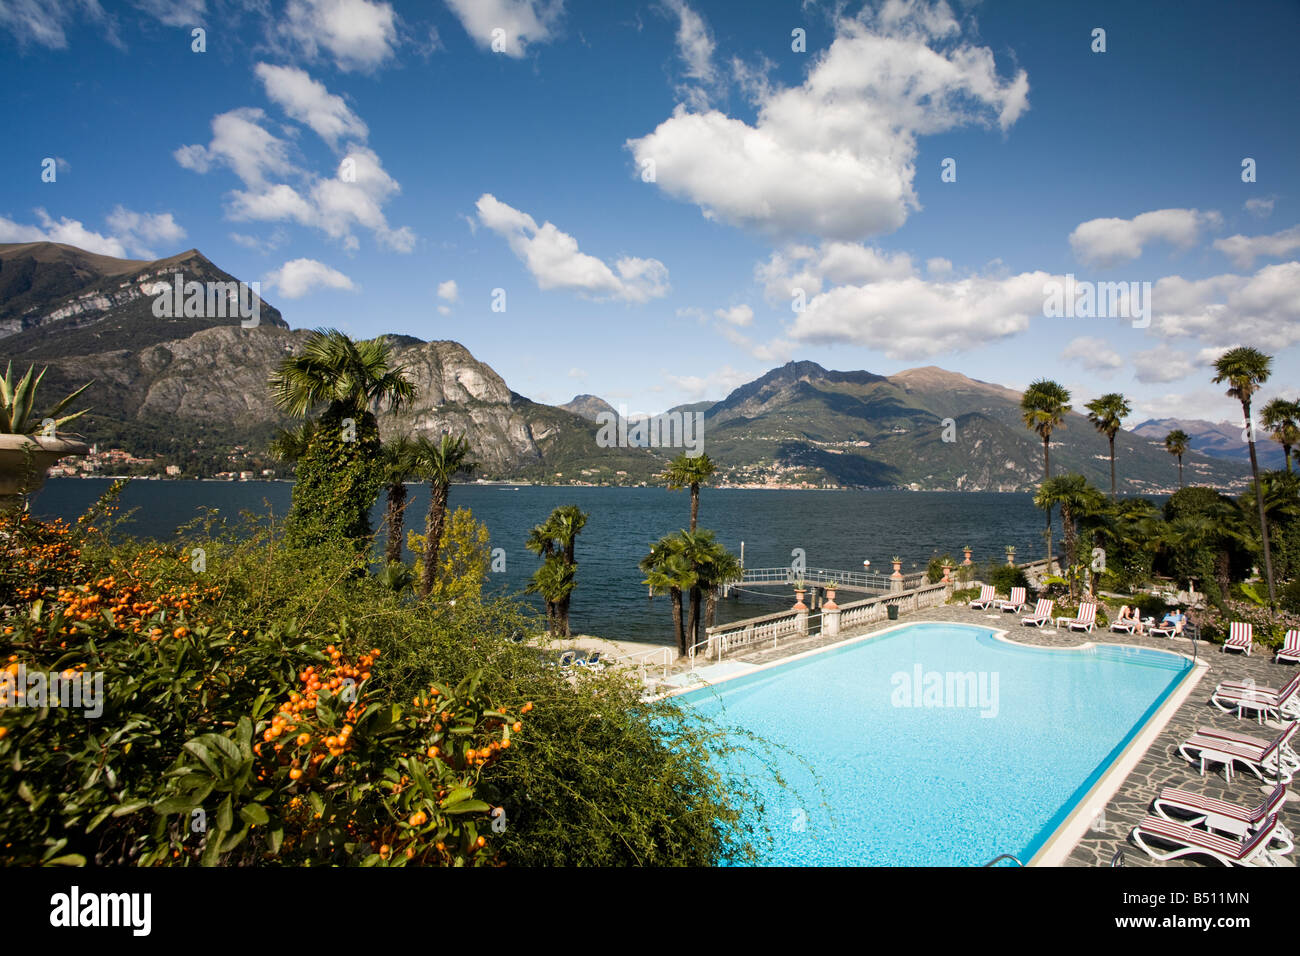 Hotel Villa Serbelloni exterior with swimming-pool, Bellagio, Como, Italy Stock Photo